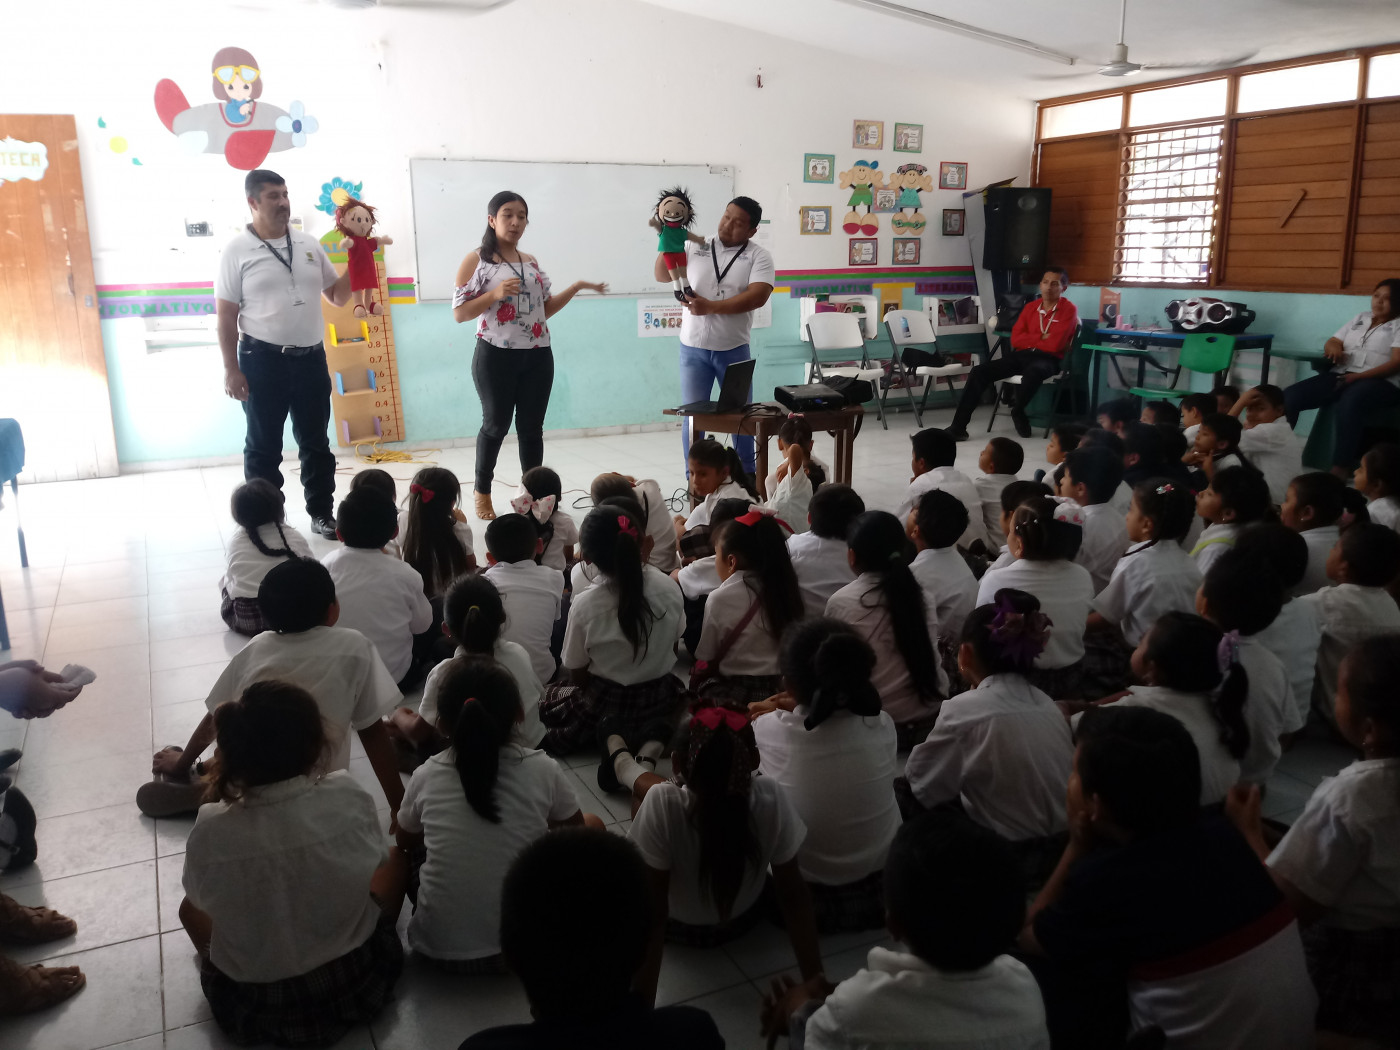 Visita a la primaria federal “Agustín Vadillo Cicero” ubicada en Mérida